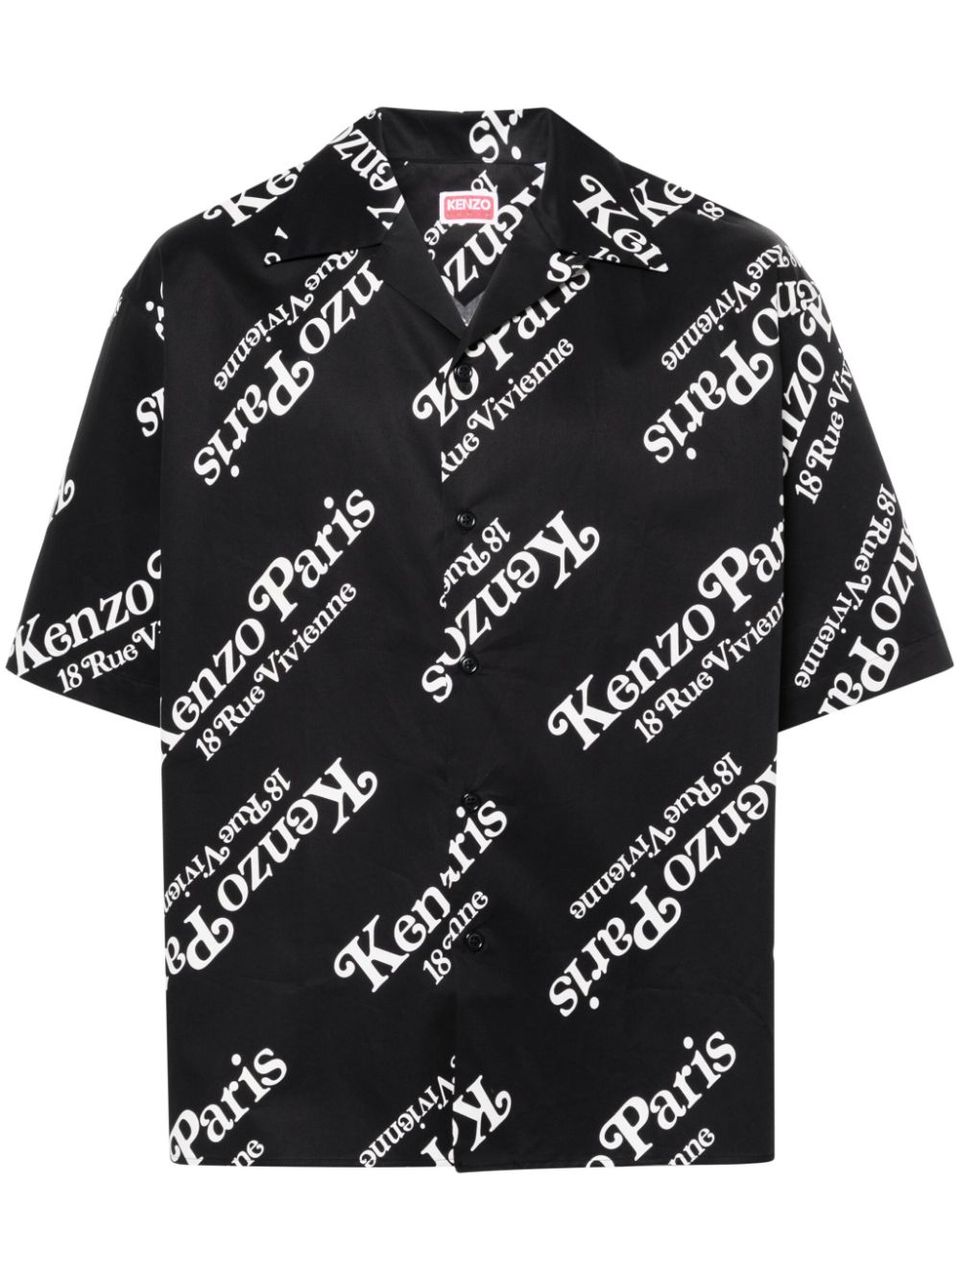 KENZO by Verdy shirt